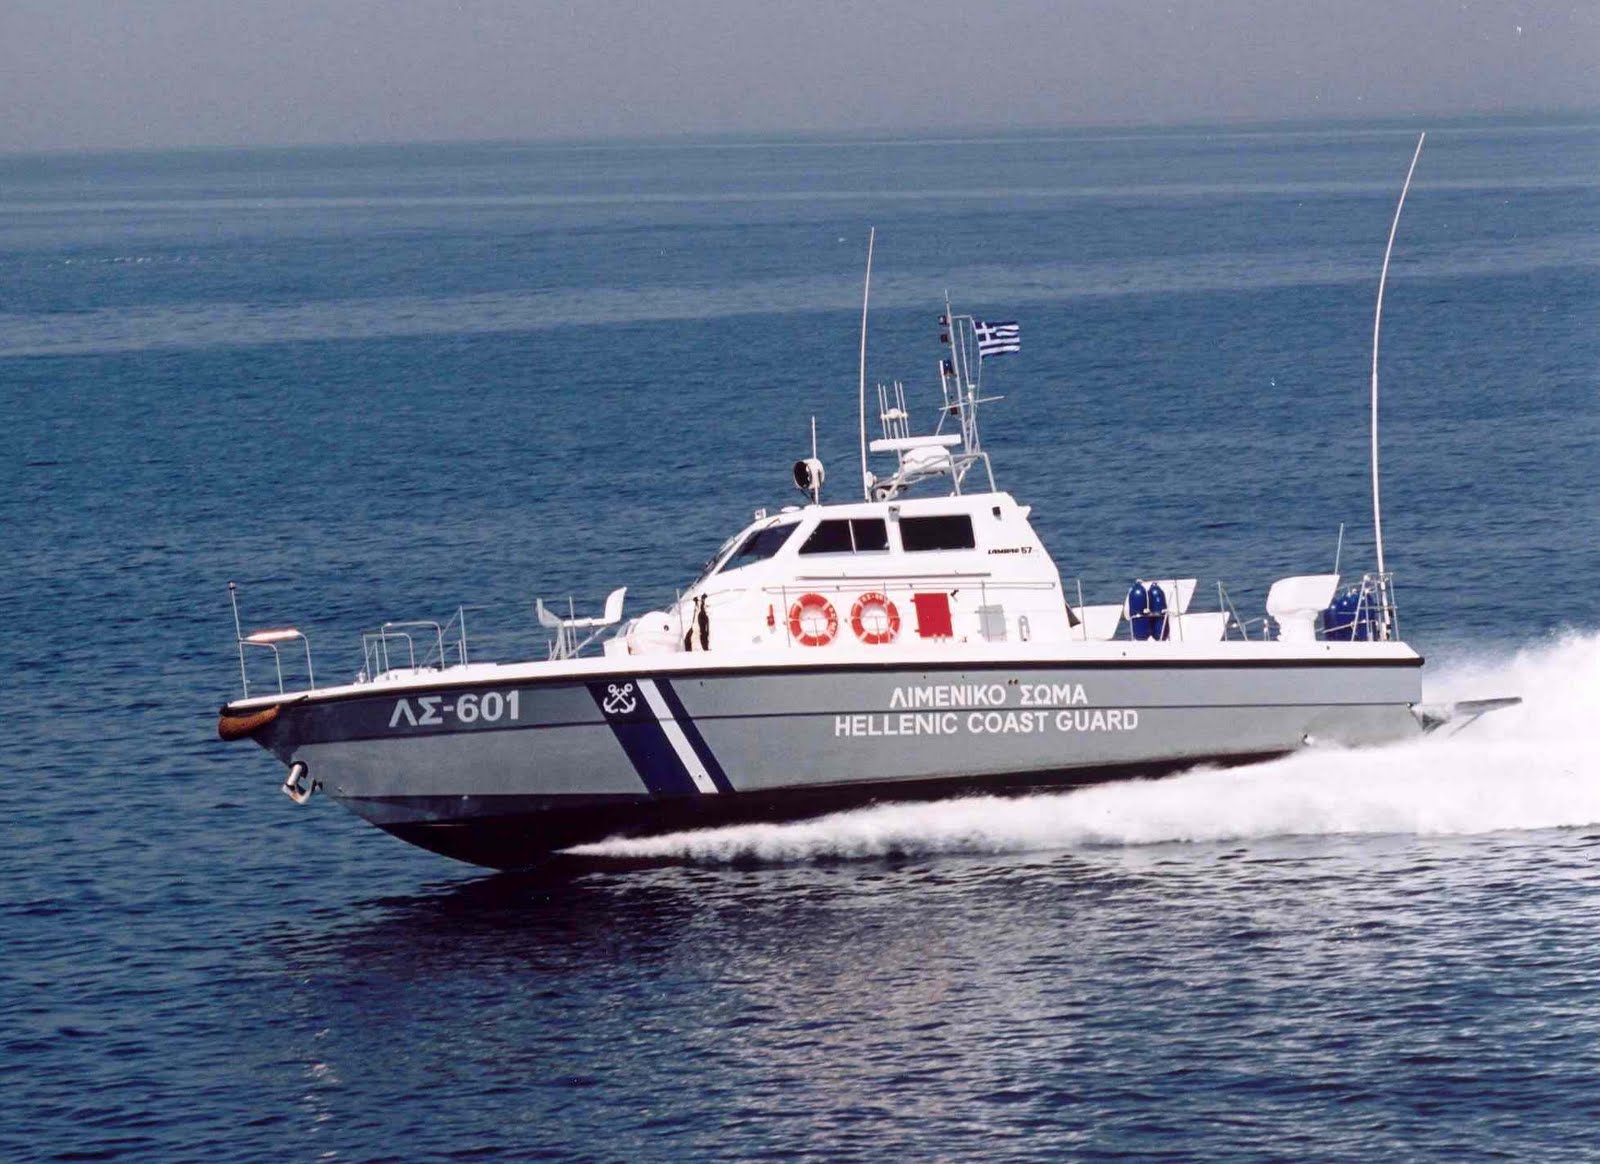 Φορτηγό πλοίο γεμάτο με όπλα εντοπίστηκε ανοιχτά της Κρήτης